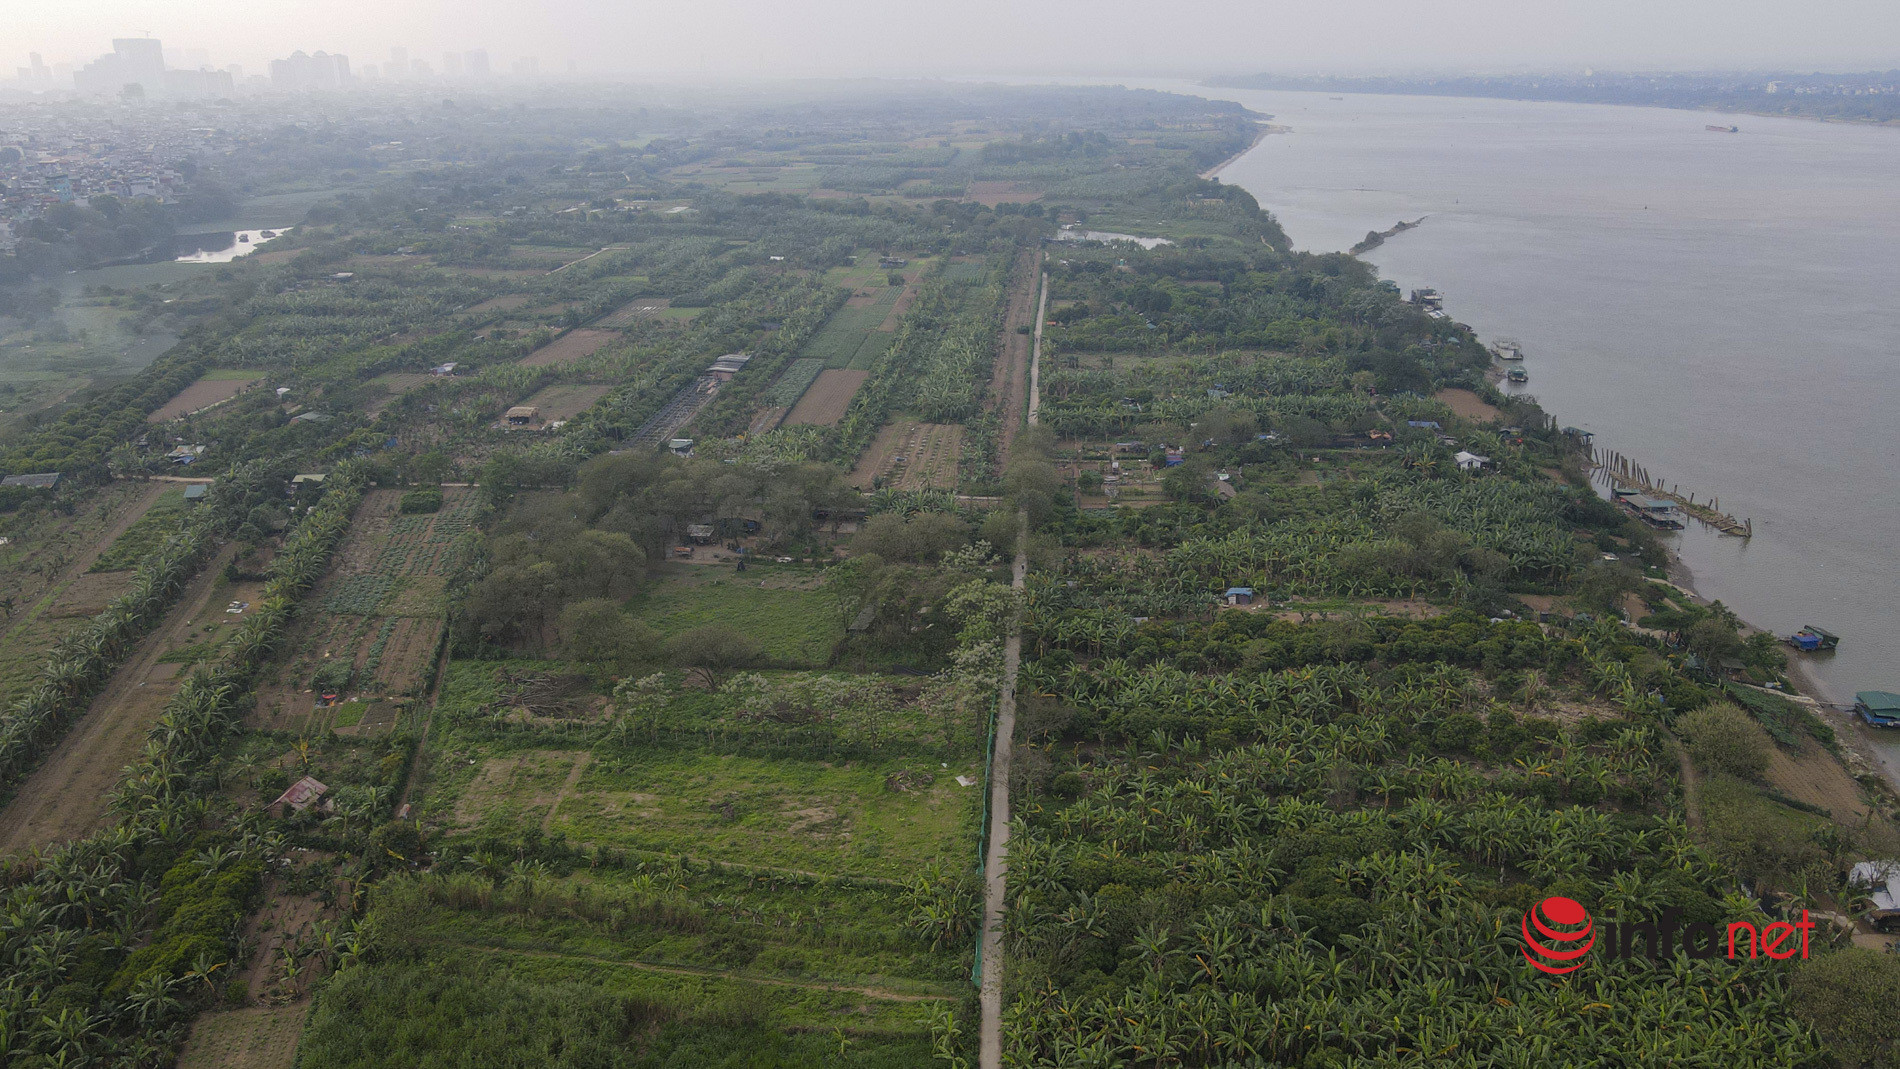 Hà Nội: Toàn cảnh bãi giữa sông Hồng nên thơ được đề xuất cải tạo thành công viên văn hóa